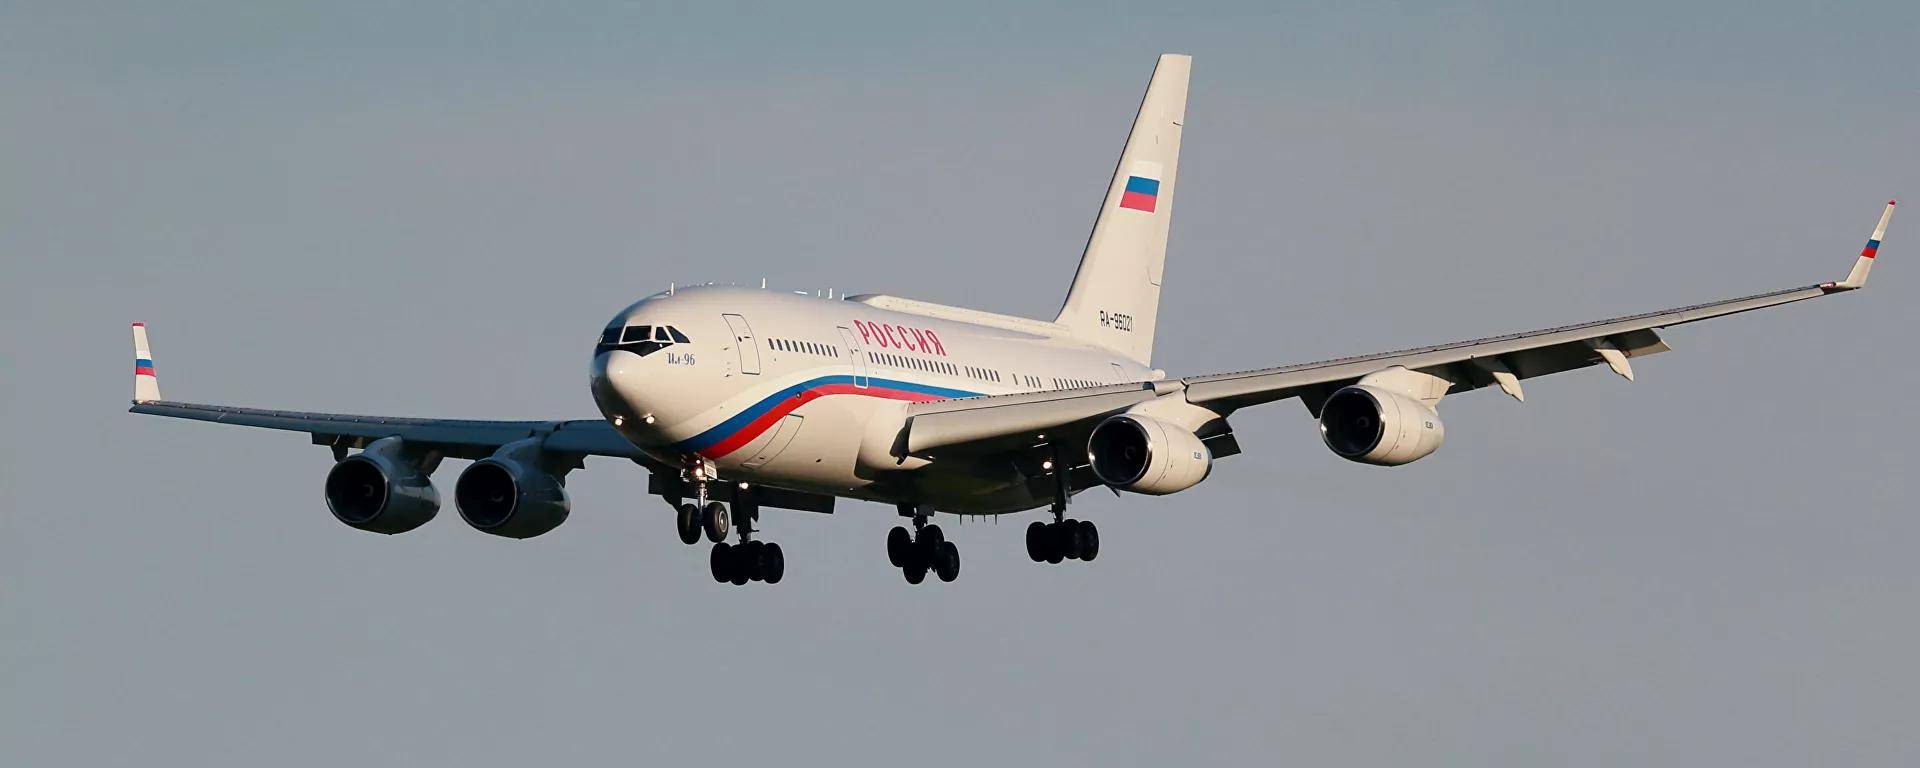 俄罗斯产客机图片